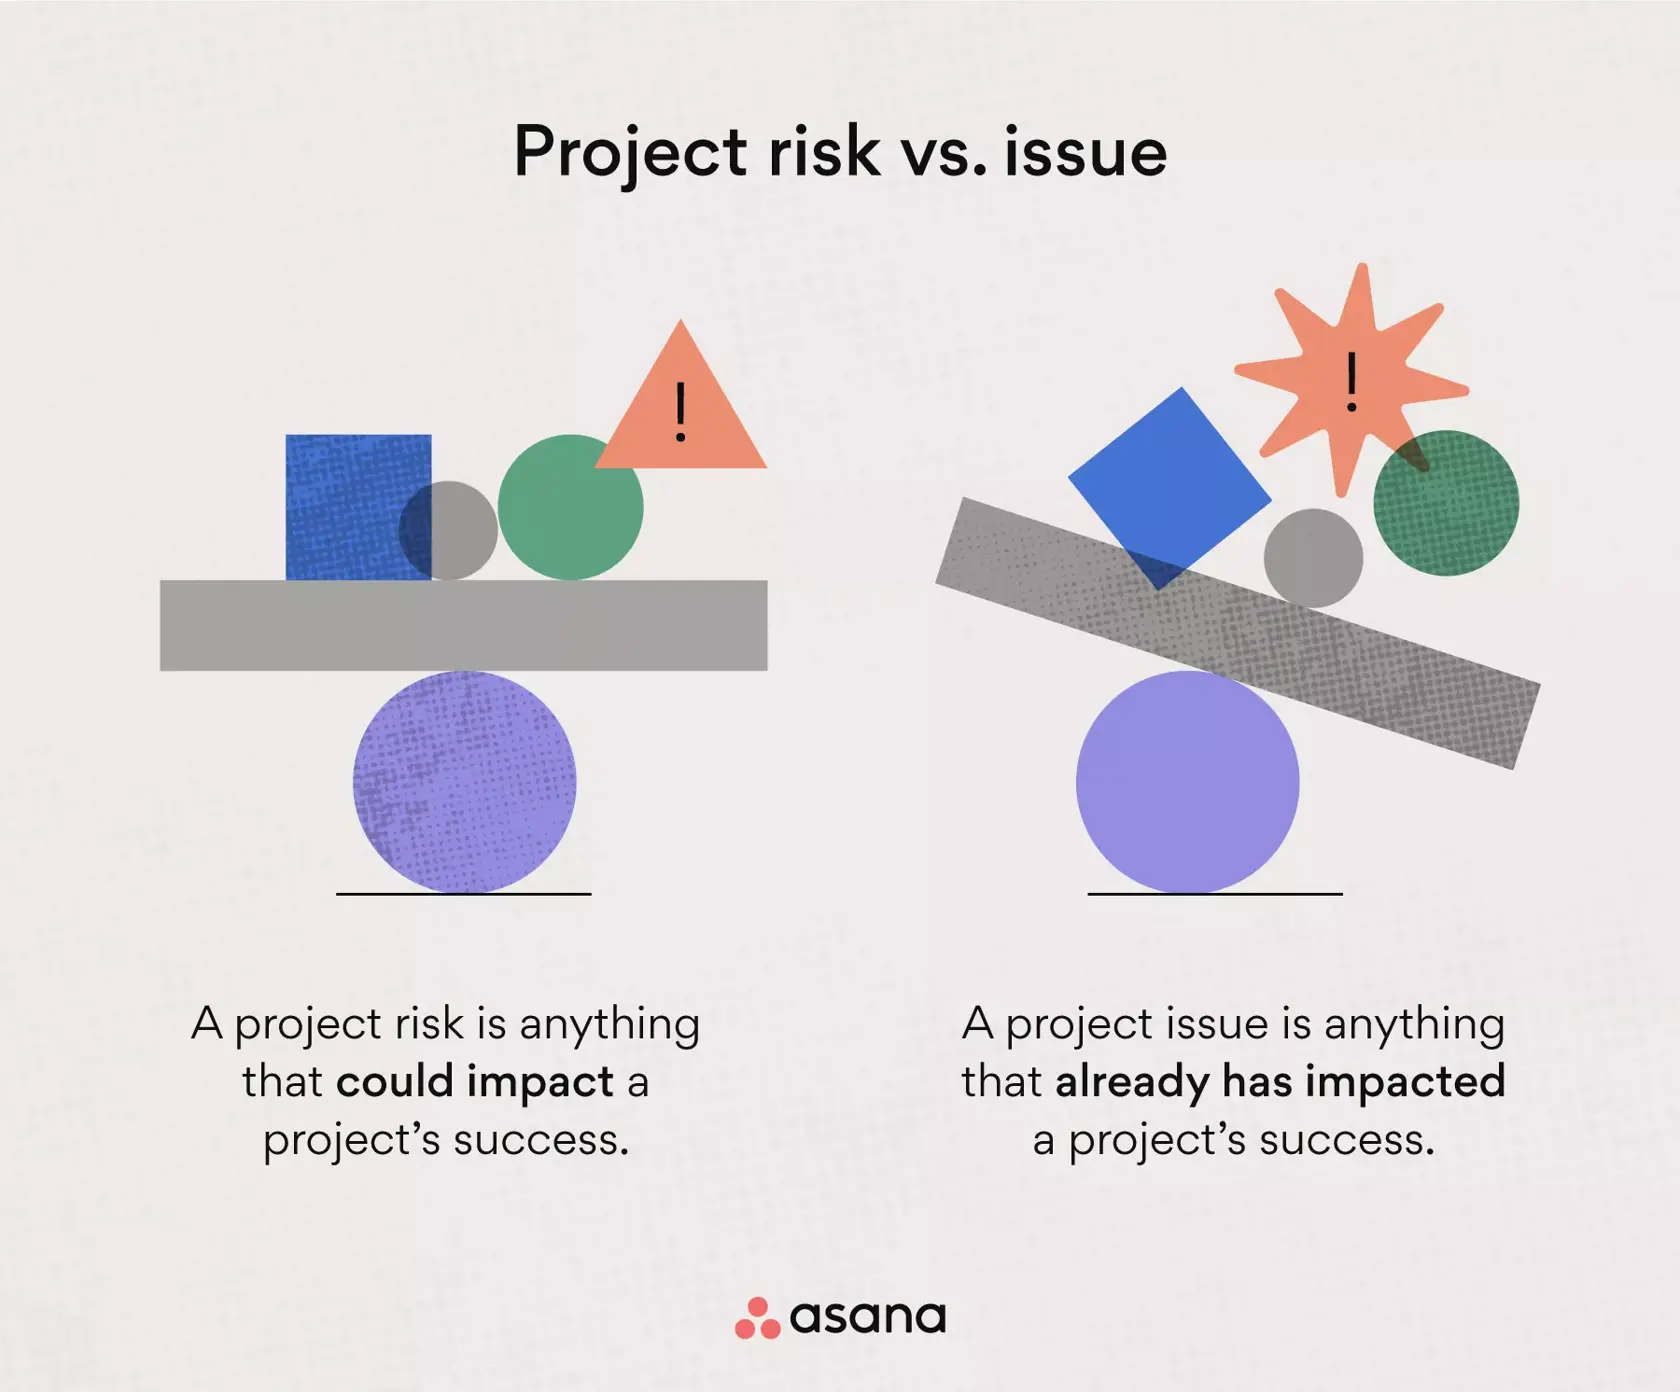 프로젝트 리스크 vs 프로젝트 관리의 문제점